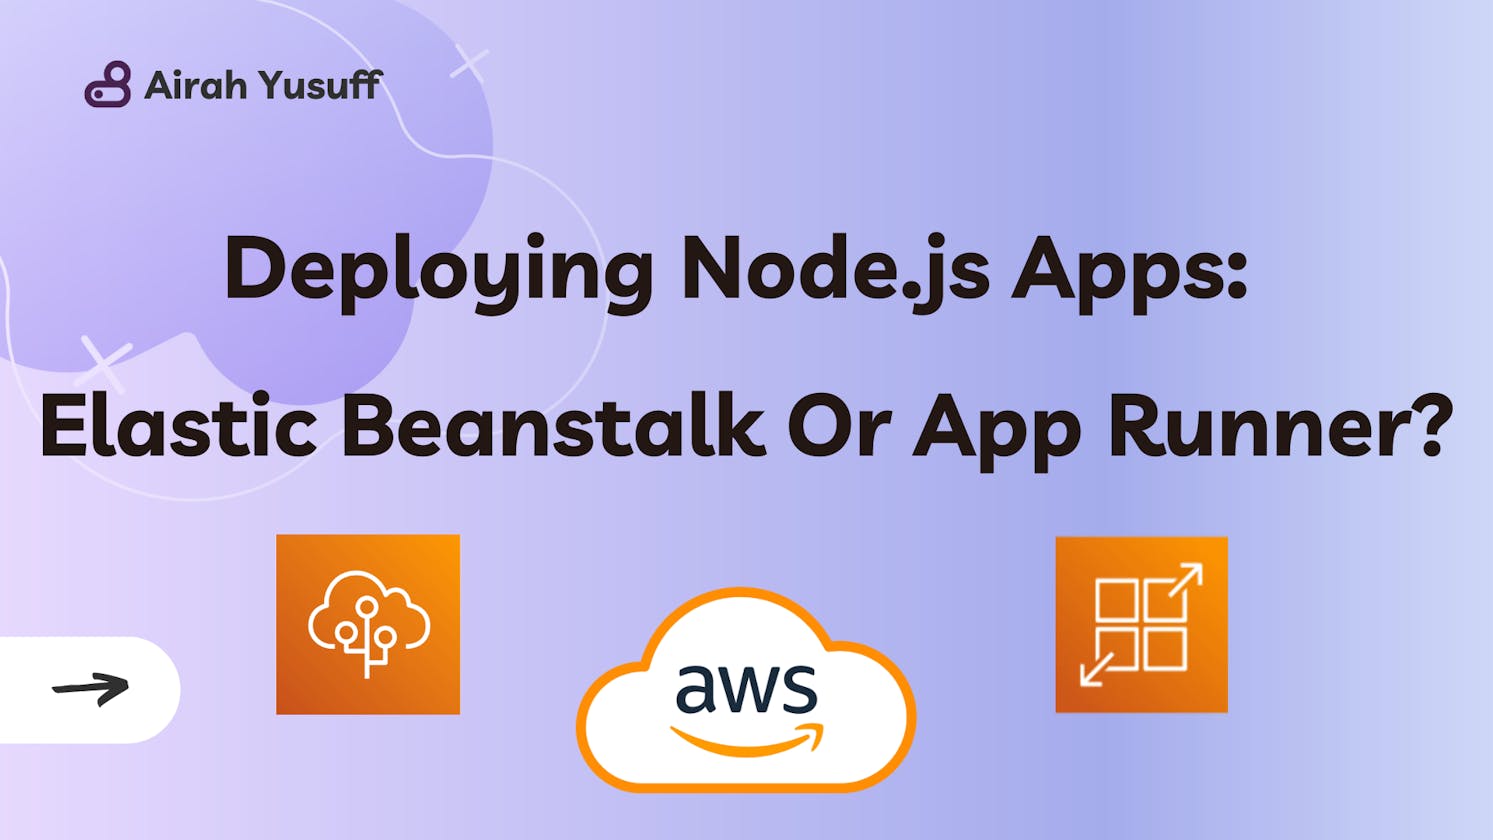 Deploying Node.js Apps on AWS: Elastic Beanstalk Or App Runner?